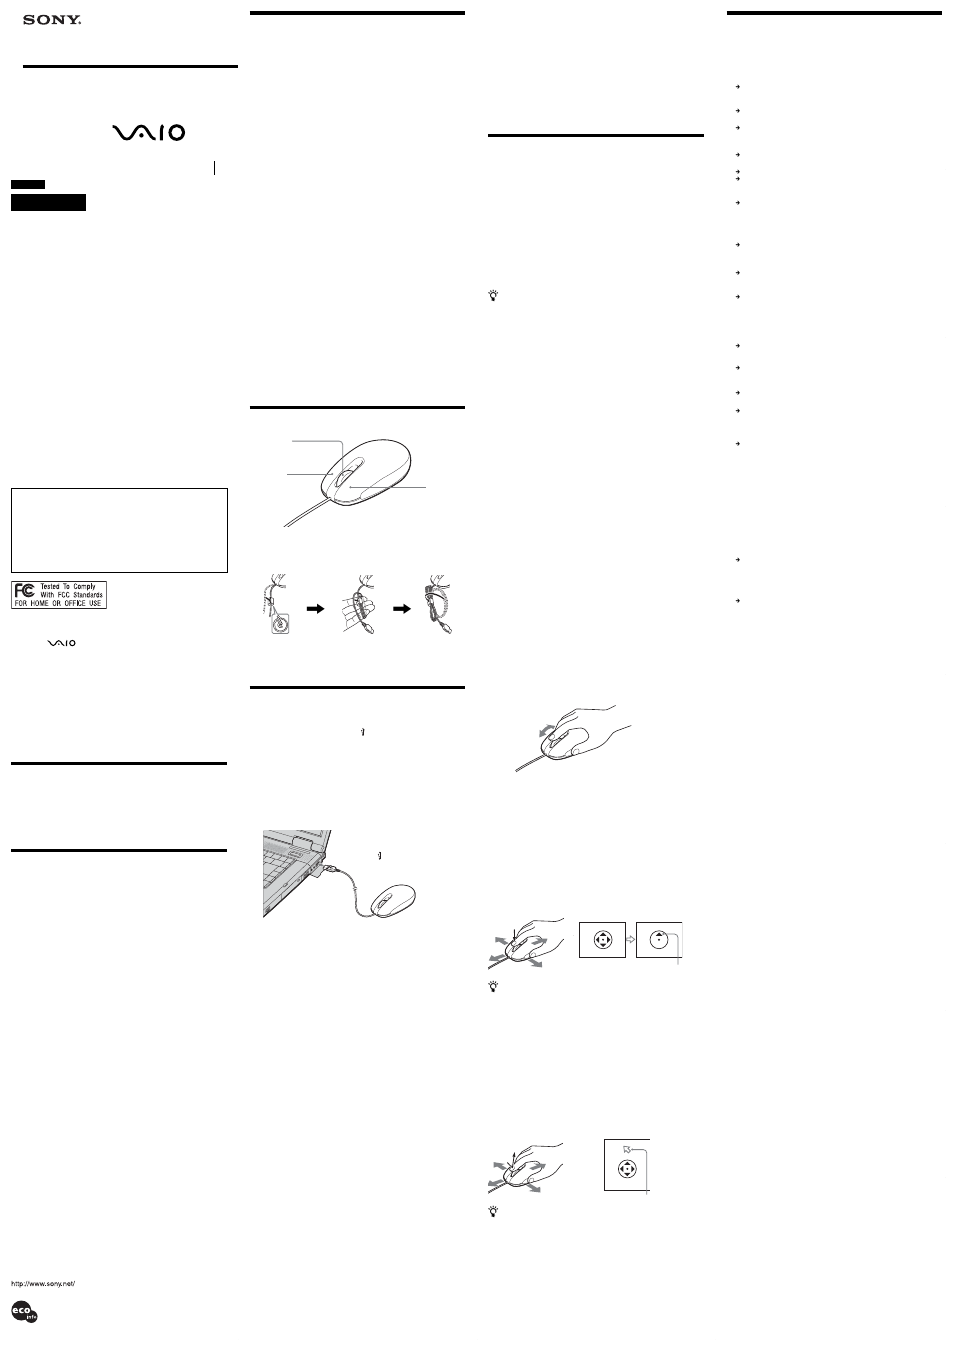 Sony PCGA-UMS3 Manuel d'utilisation | Pages: 2